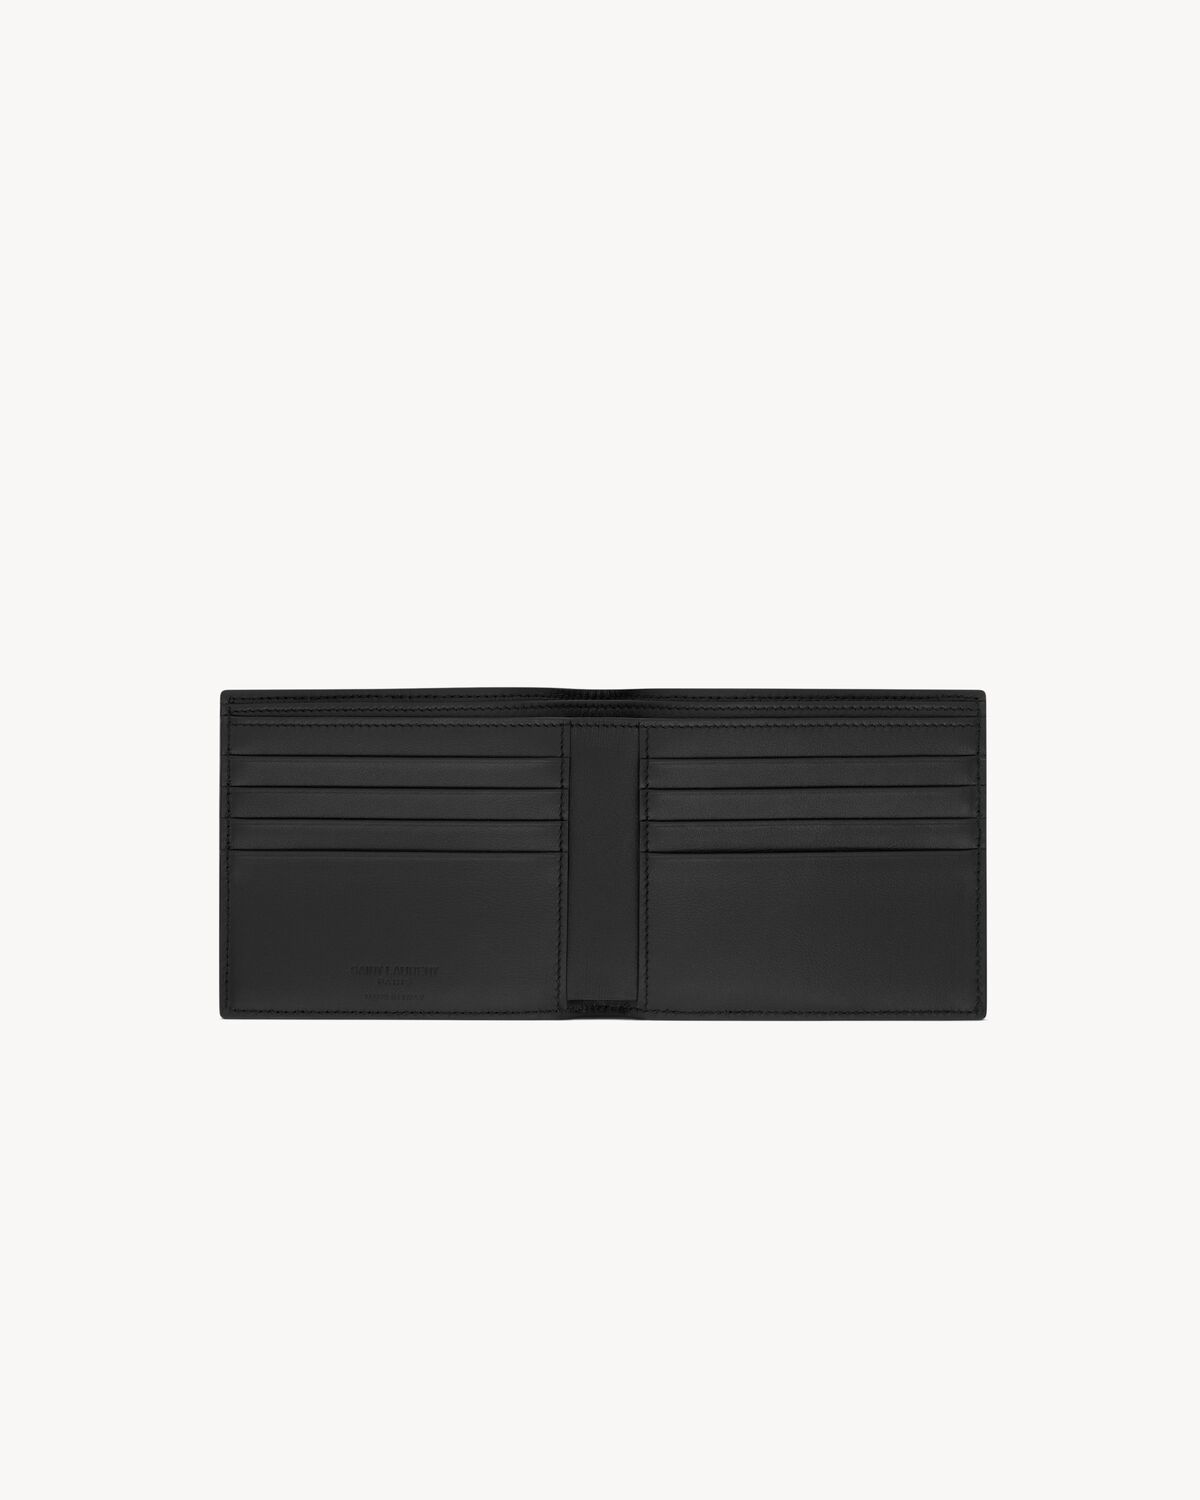 Saint Laurent Paris EAST/WEST wallet in grid leather